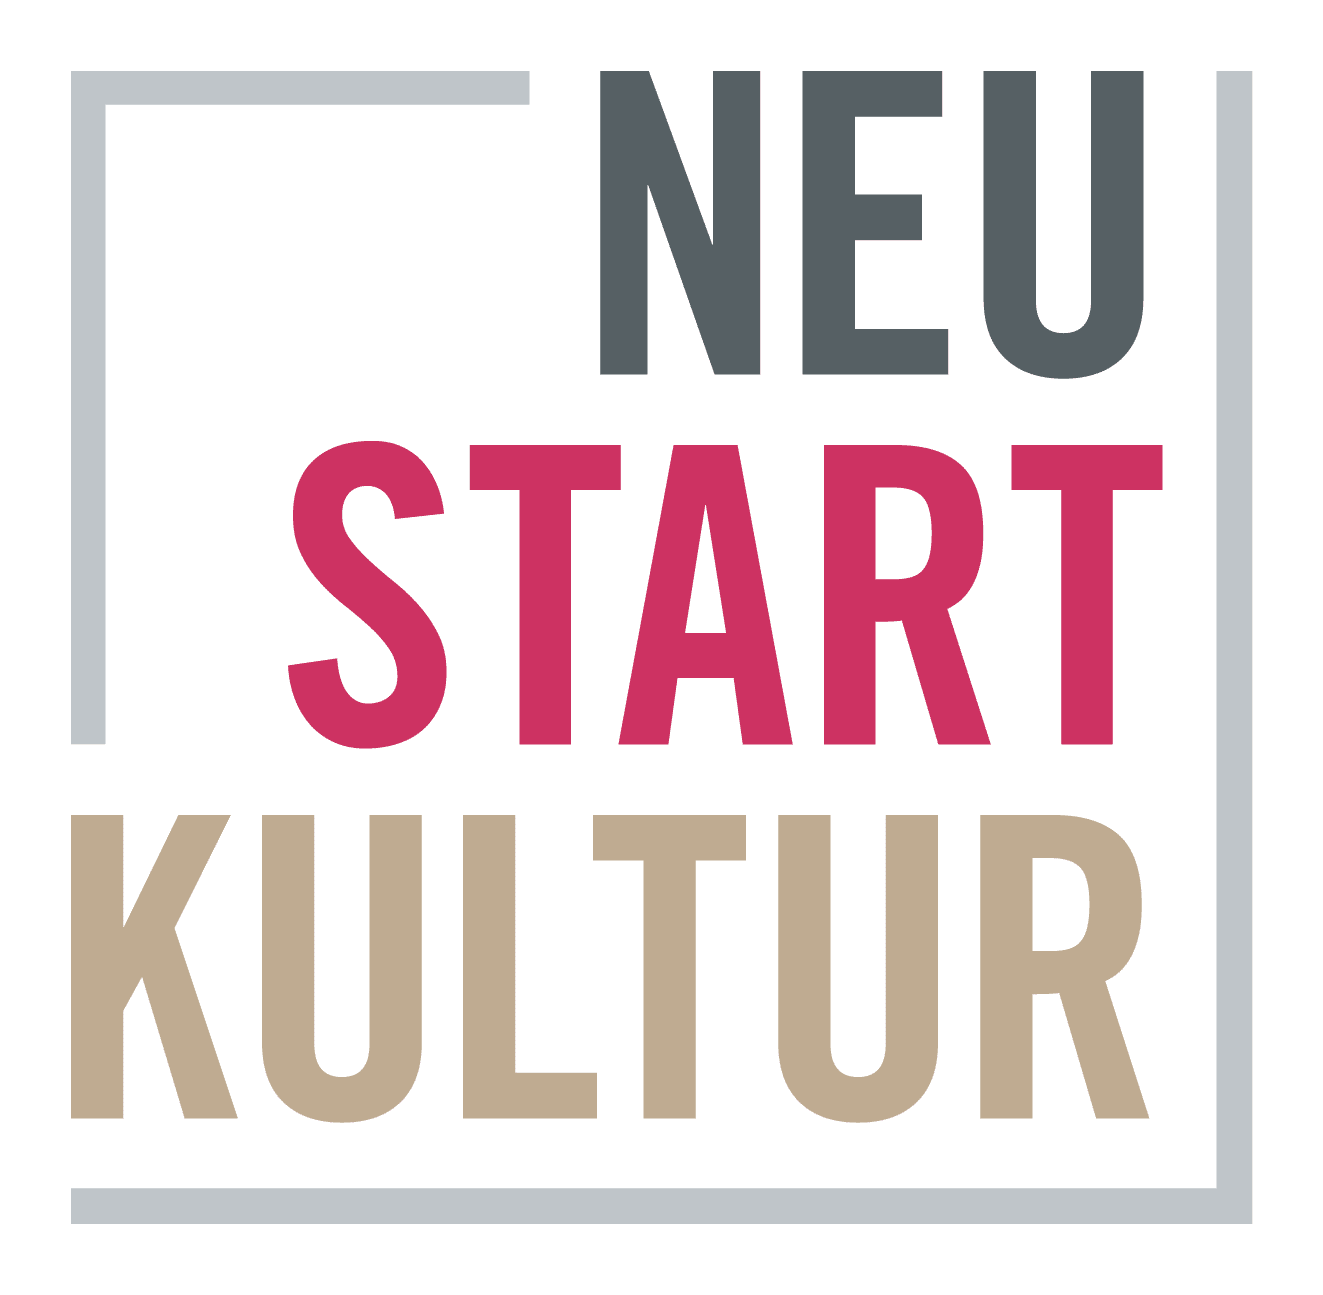 Logo: Neustart Kultur